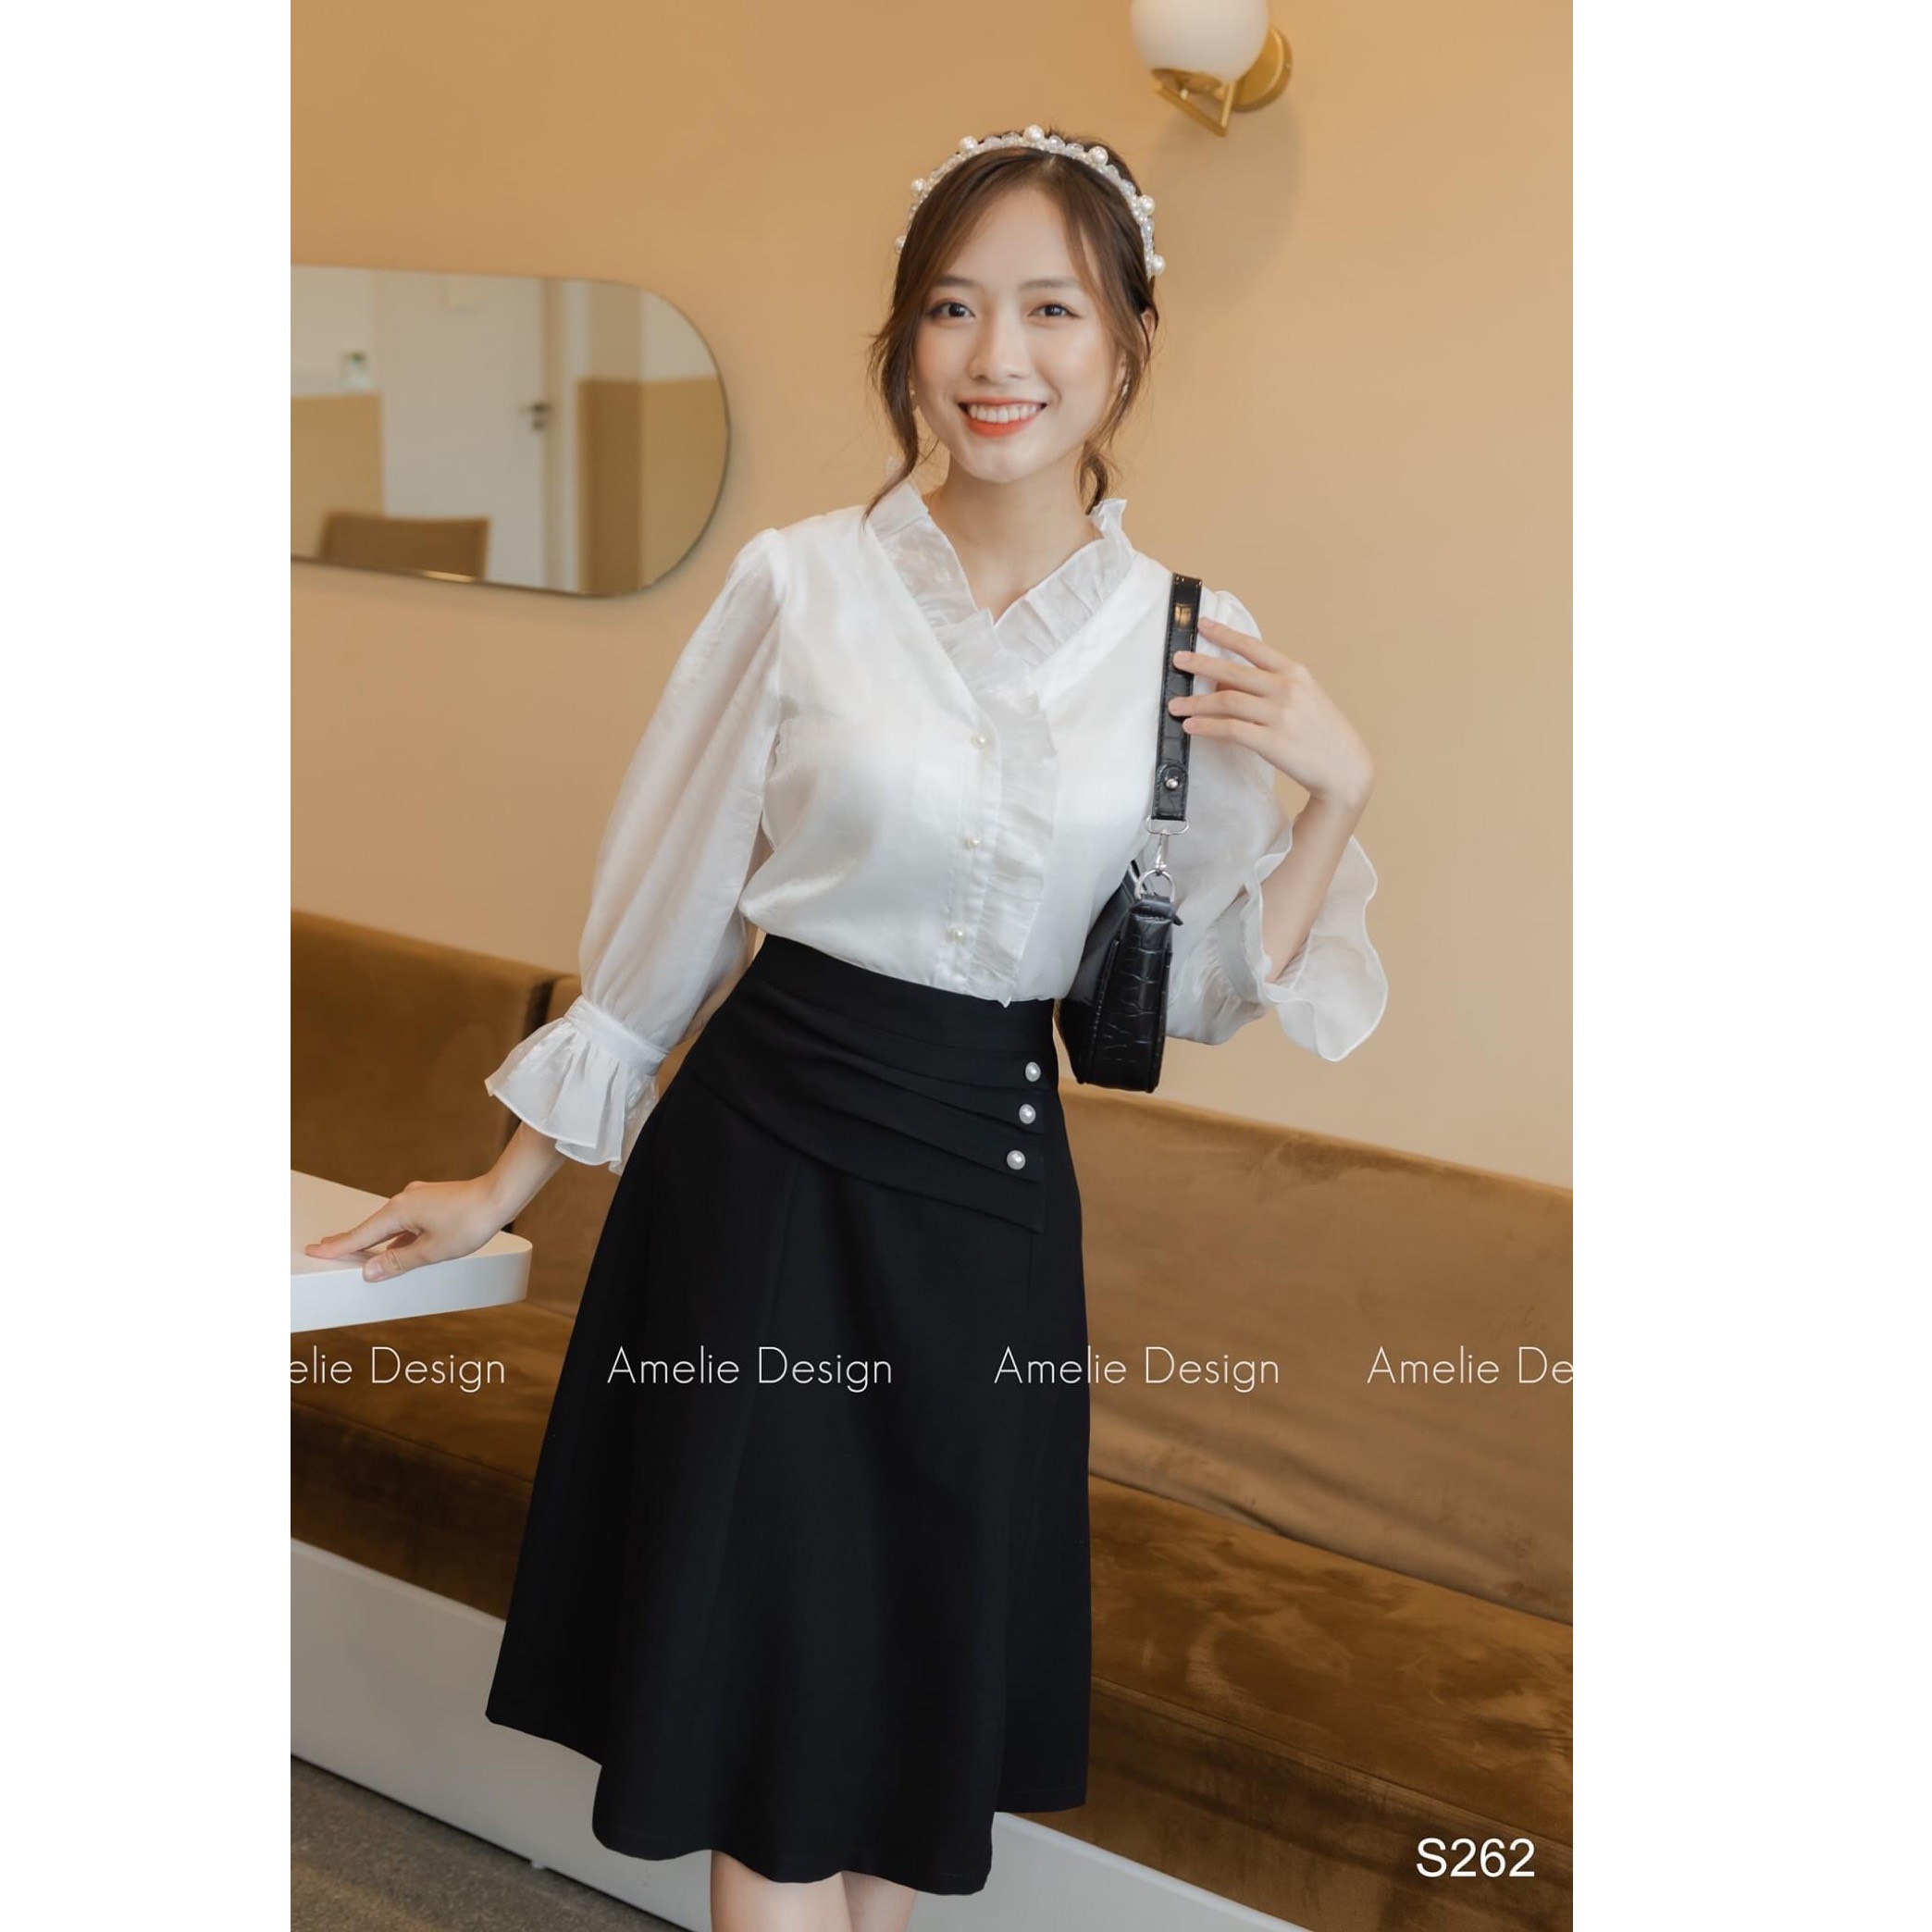 Chân váy xoè dài qua gối phong cách Hàn Quốc giá rẻ nhất tháng 42023